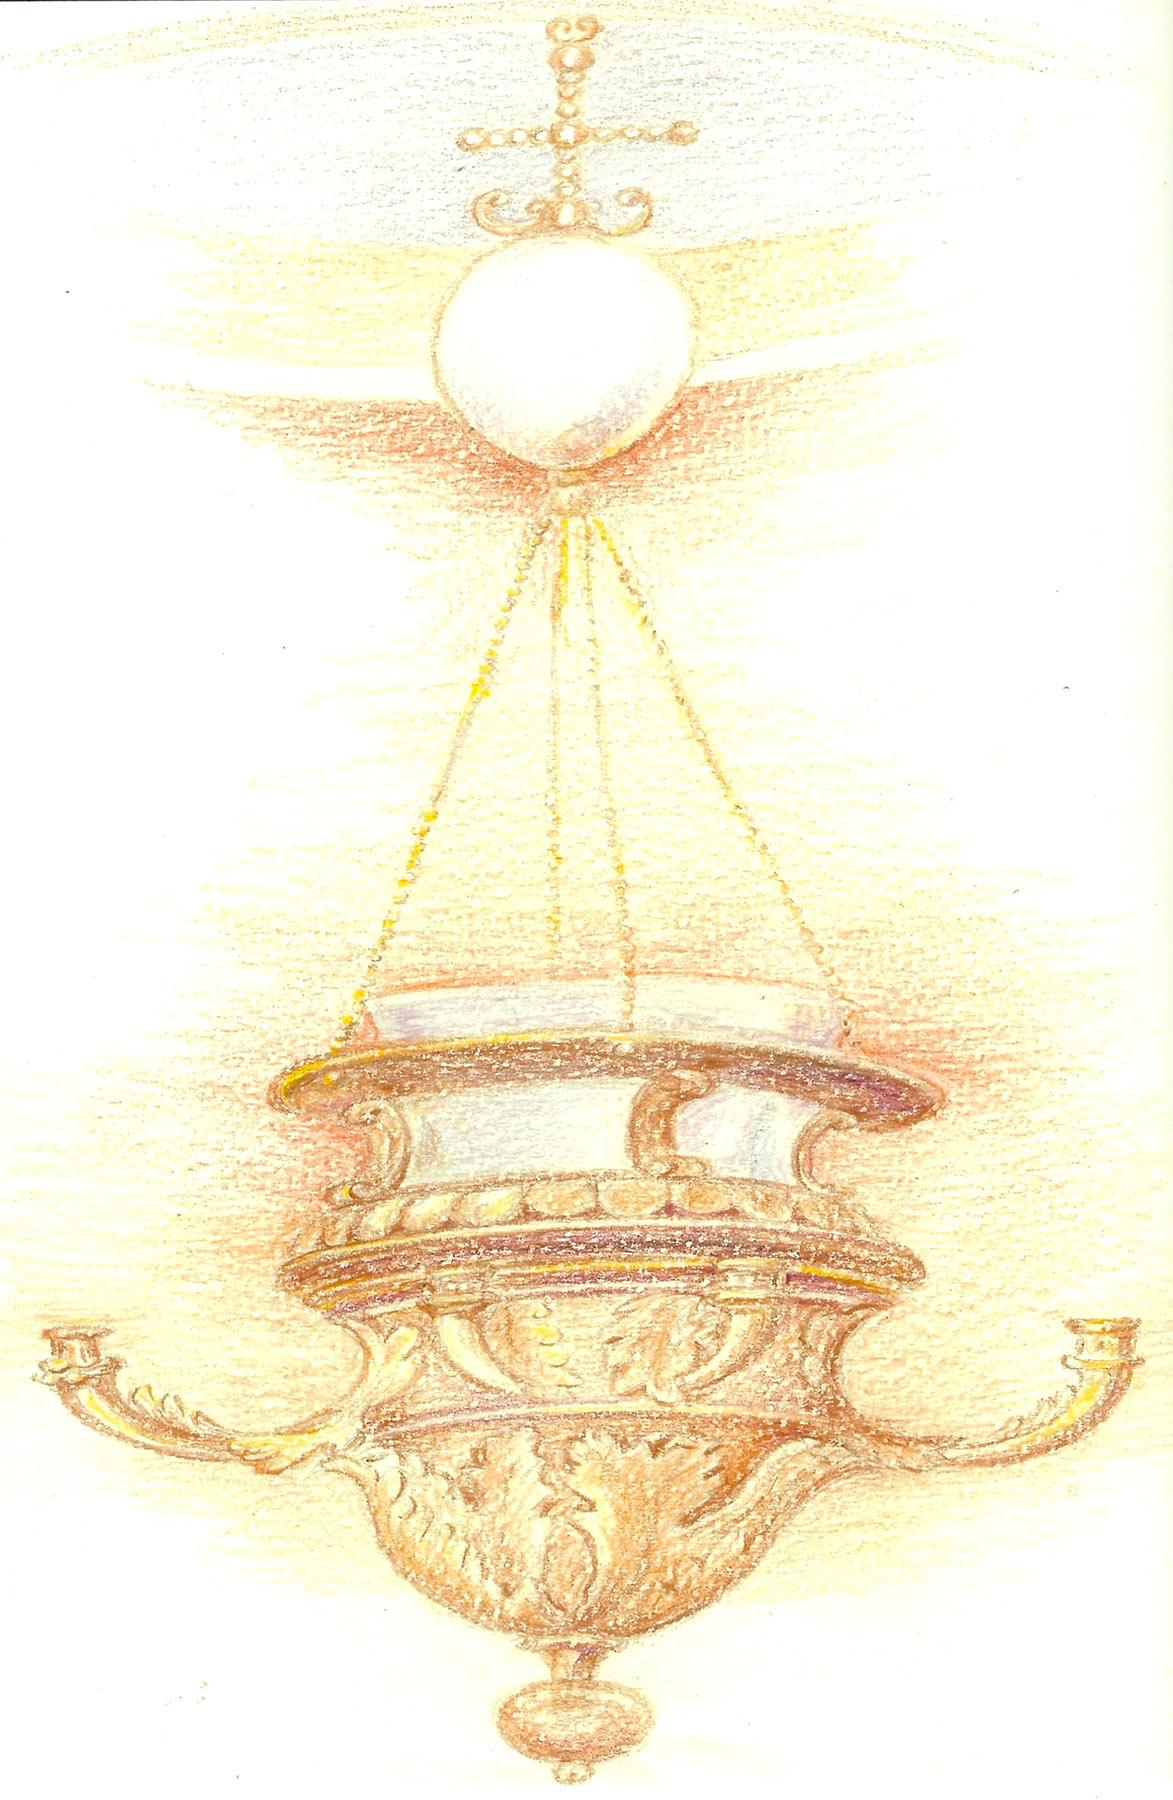 Il rilievo della lampada, preso sui ponteggi da Renza Bolognesi, conferma l'estrema attenzione del Correggio ai dettagli piÃ¹ raffinati, come la crocettina di perle sopra l'uovo mistico e le catenelle finissime.
